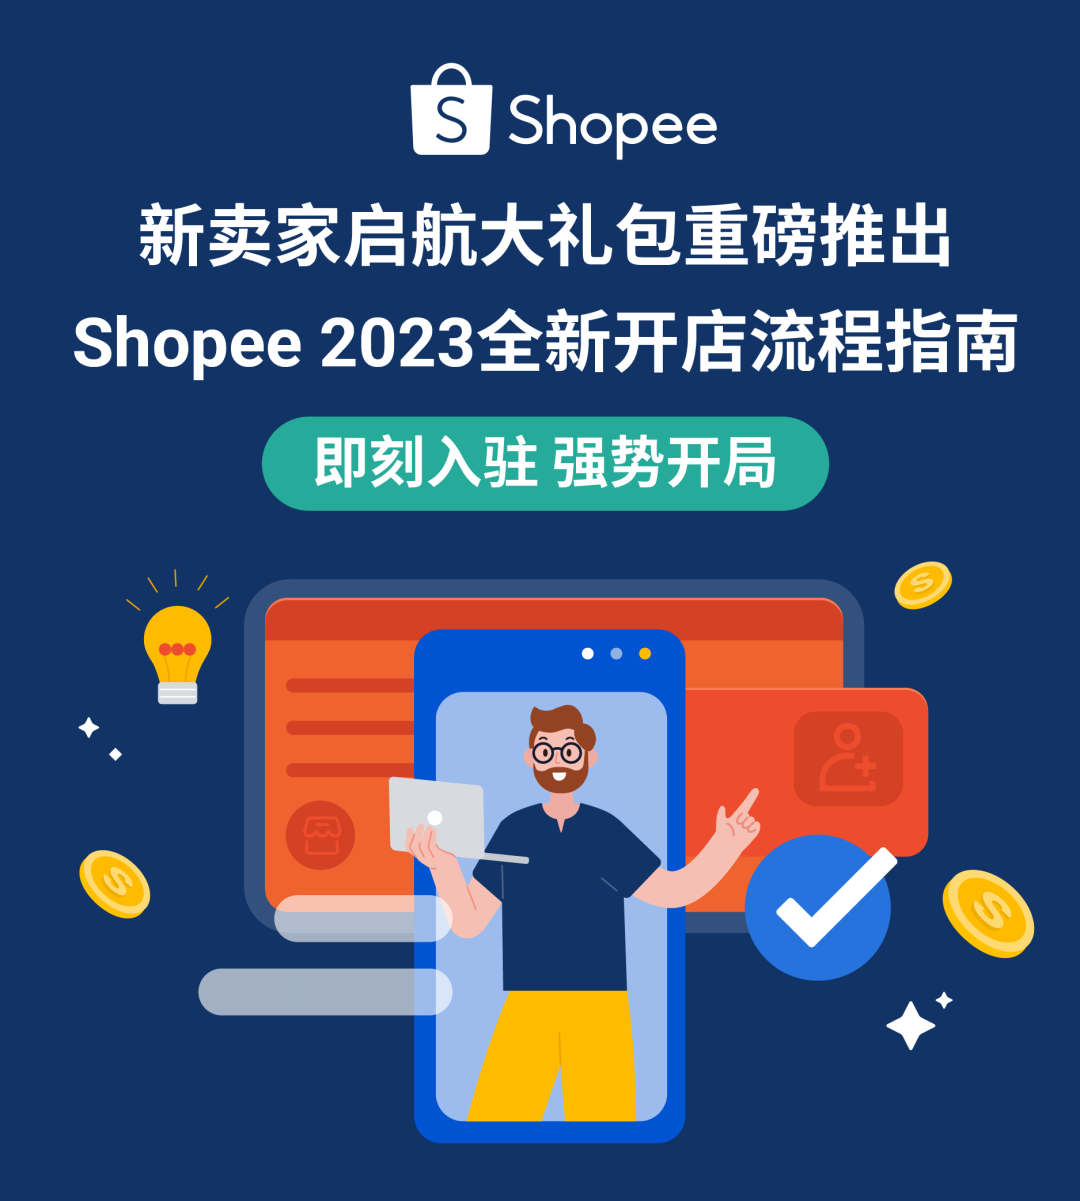 新卖家启航大礼包重磅推出, Shopee 2023全新开店流程详解